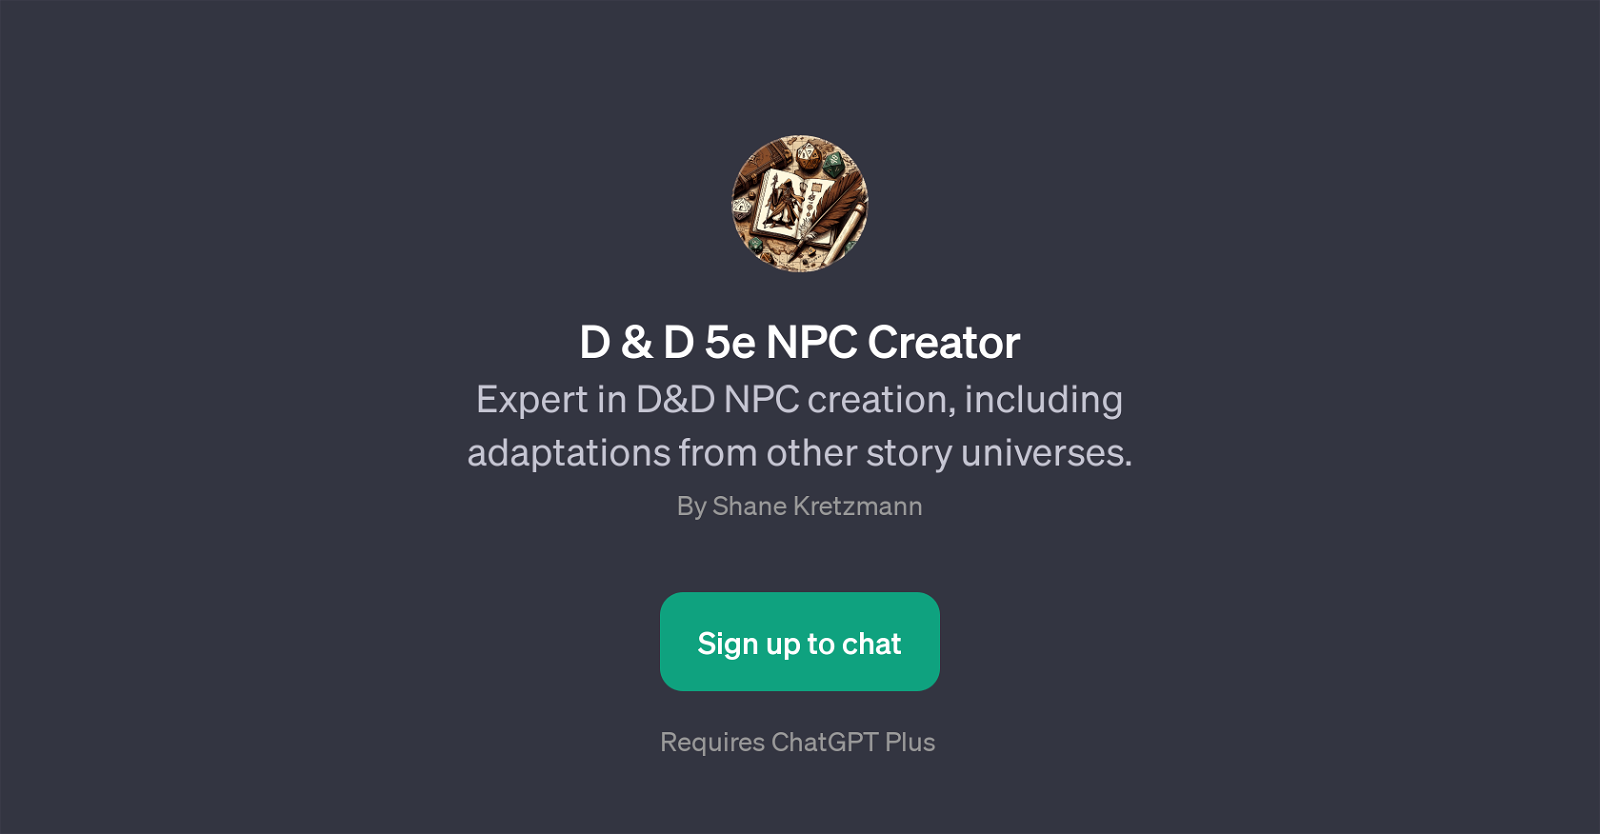 D & D 5e NPC Creator website